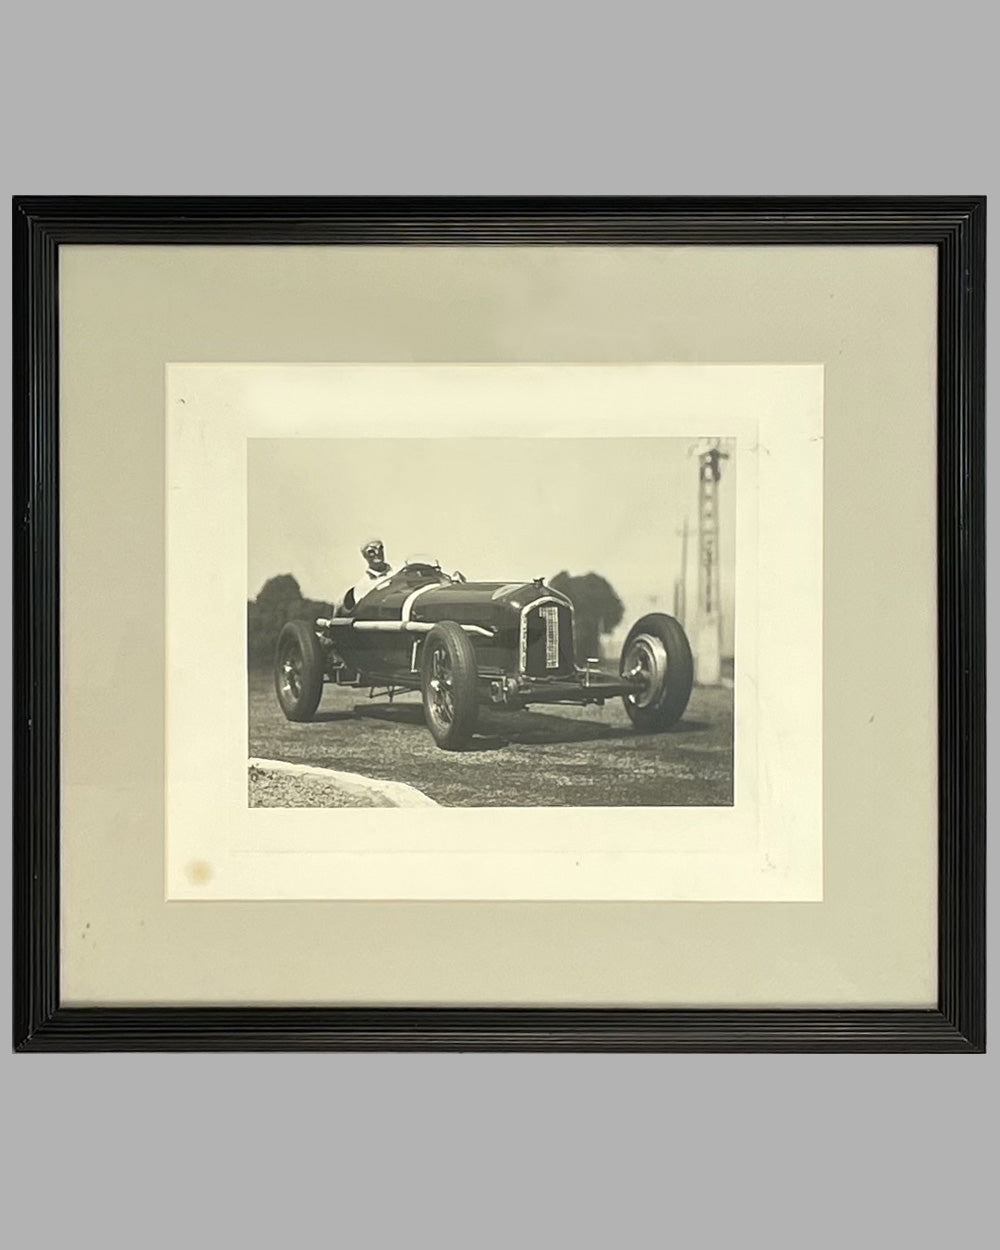 Louis Chiron racing his Alfa Romeo P3 Grand Prix car in 1934 b&w photograph